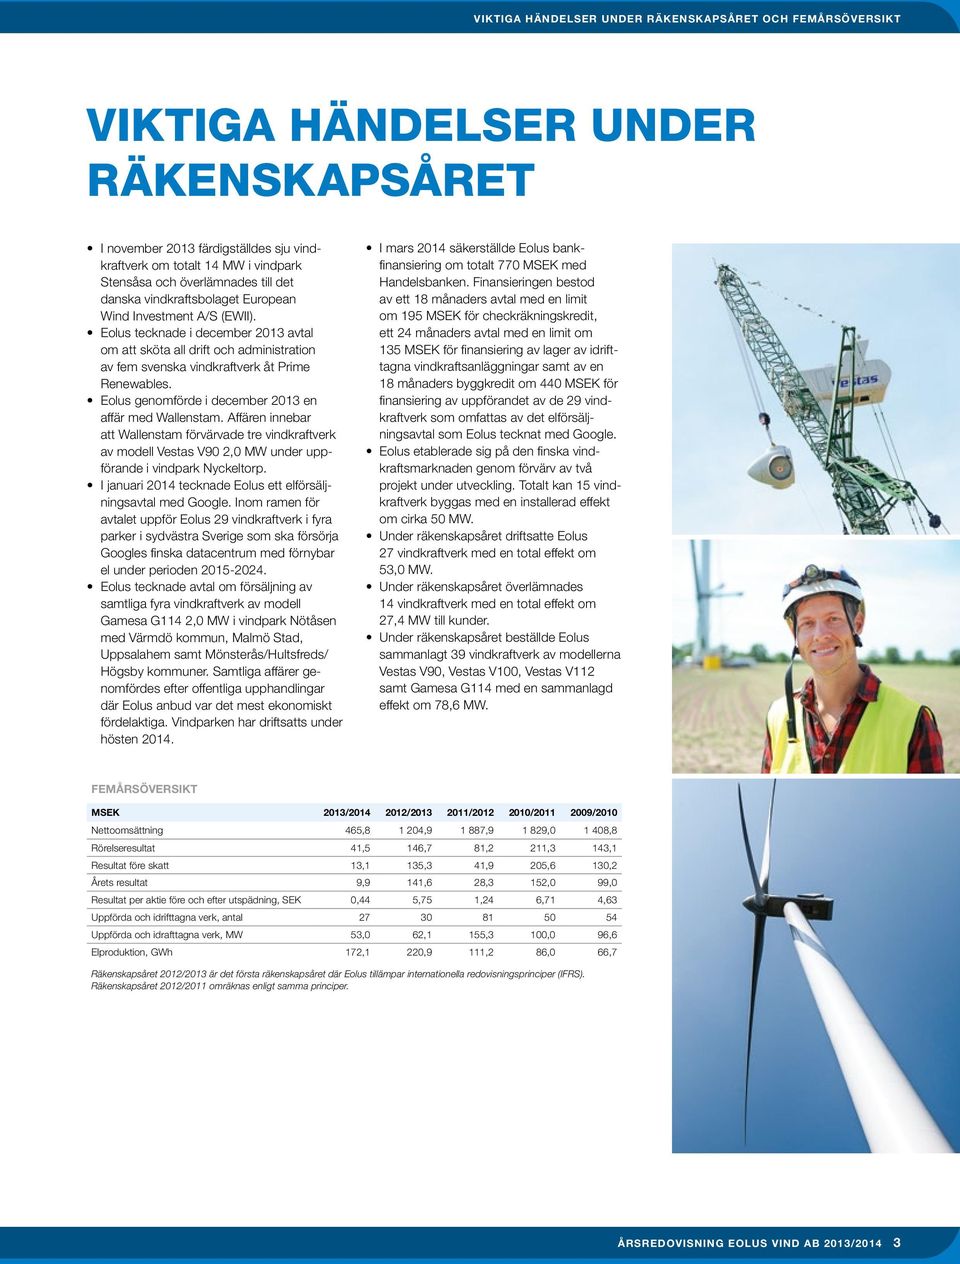 Eolus genomförde i december 2013 en affär med Wallenstam. Affären innebar att Wallenstam förvärvade tre vindkraftverk av modell Vestas V90 2,0 MW under uppförande i vindpark Nyckeltorp.